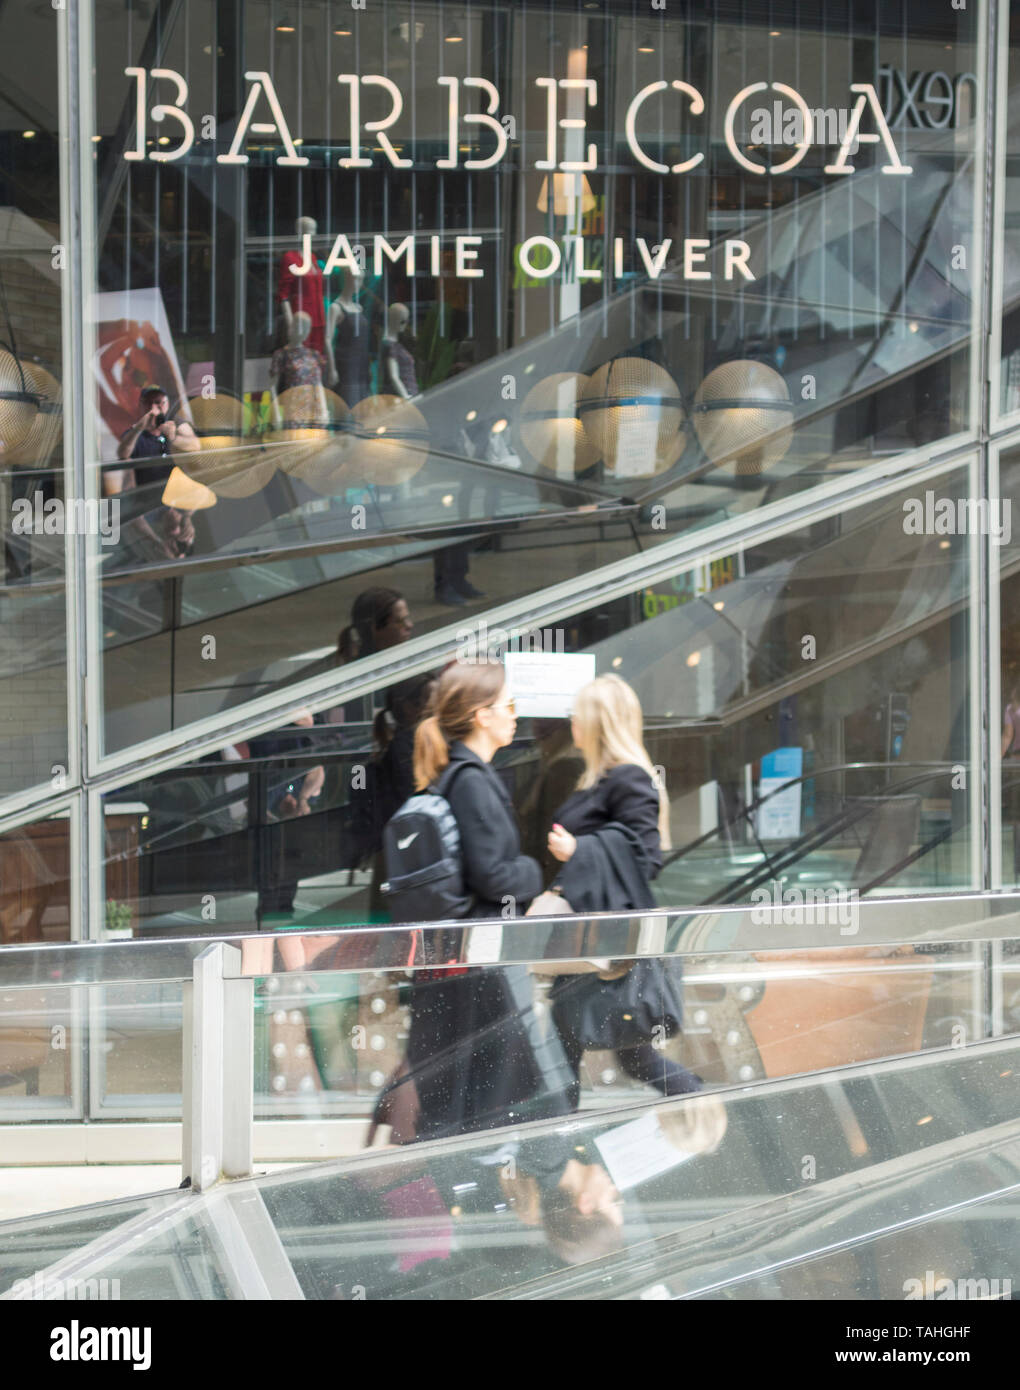 Extérieur de Jamie Oliver's restaurant Barbecoa, nouveau changement, City of London, London, EC4 Banque D'Images